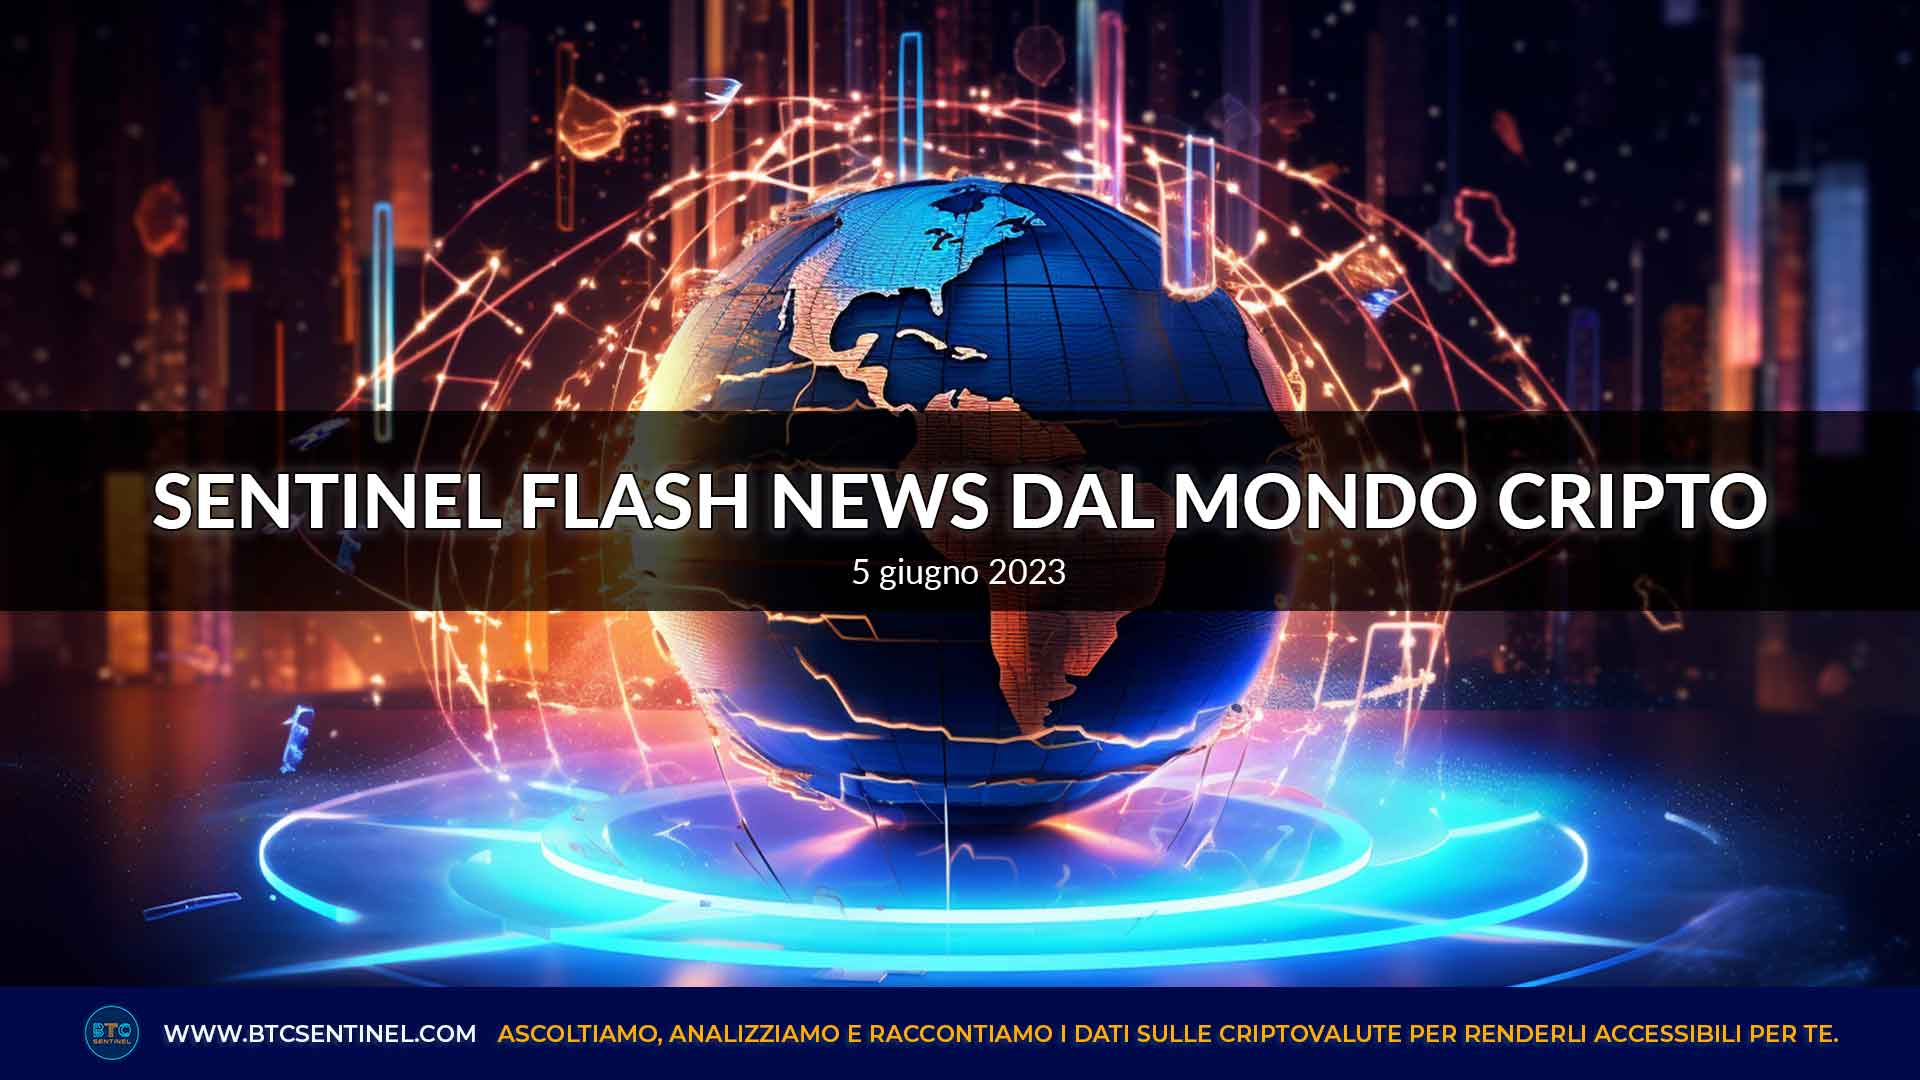 Criptovalute: Sentinel Flash News dal mondo cripto di lunedì 5 giugno 2023